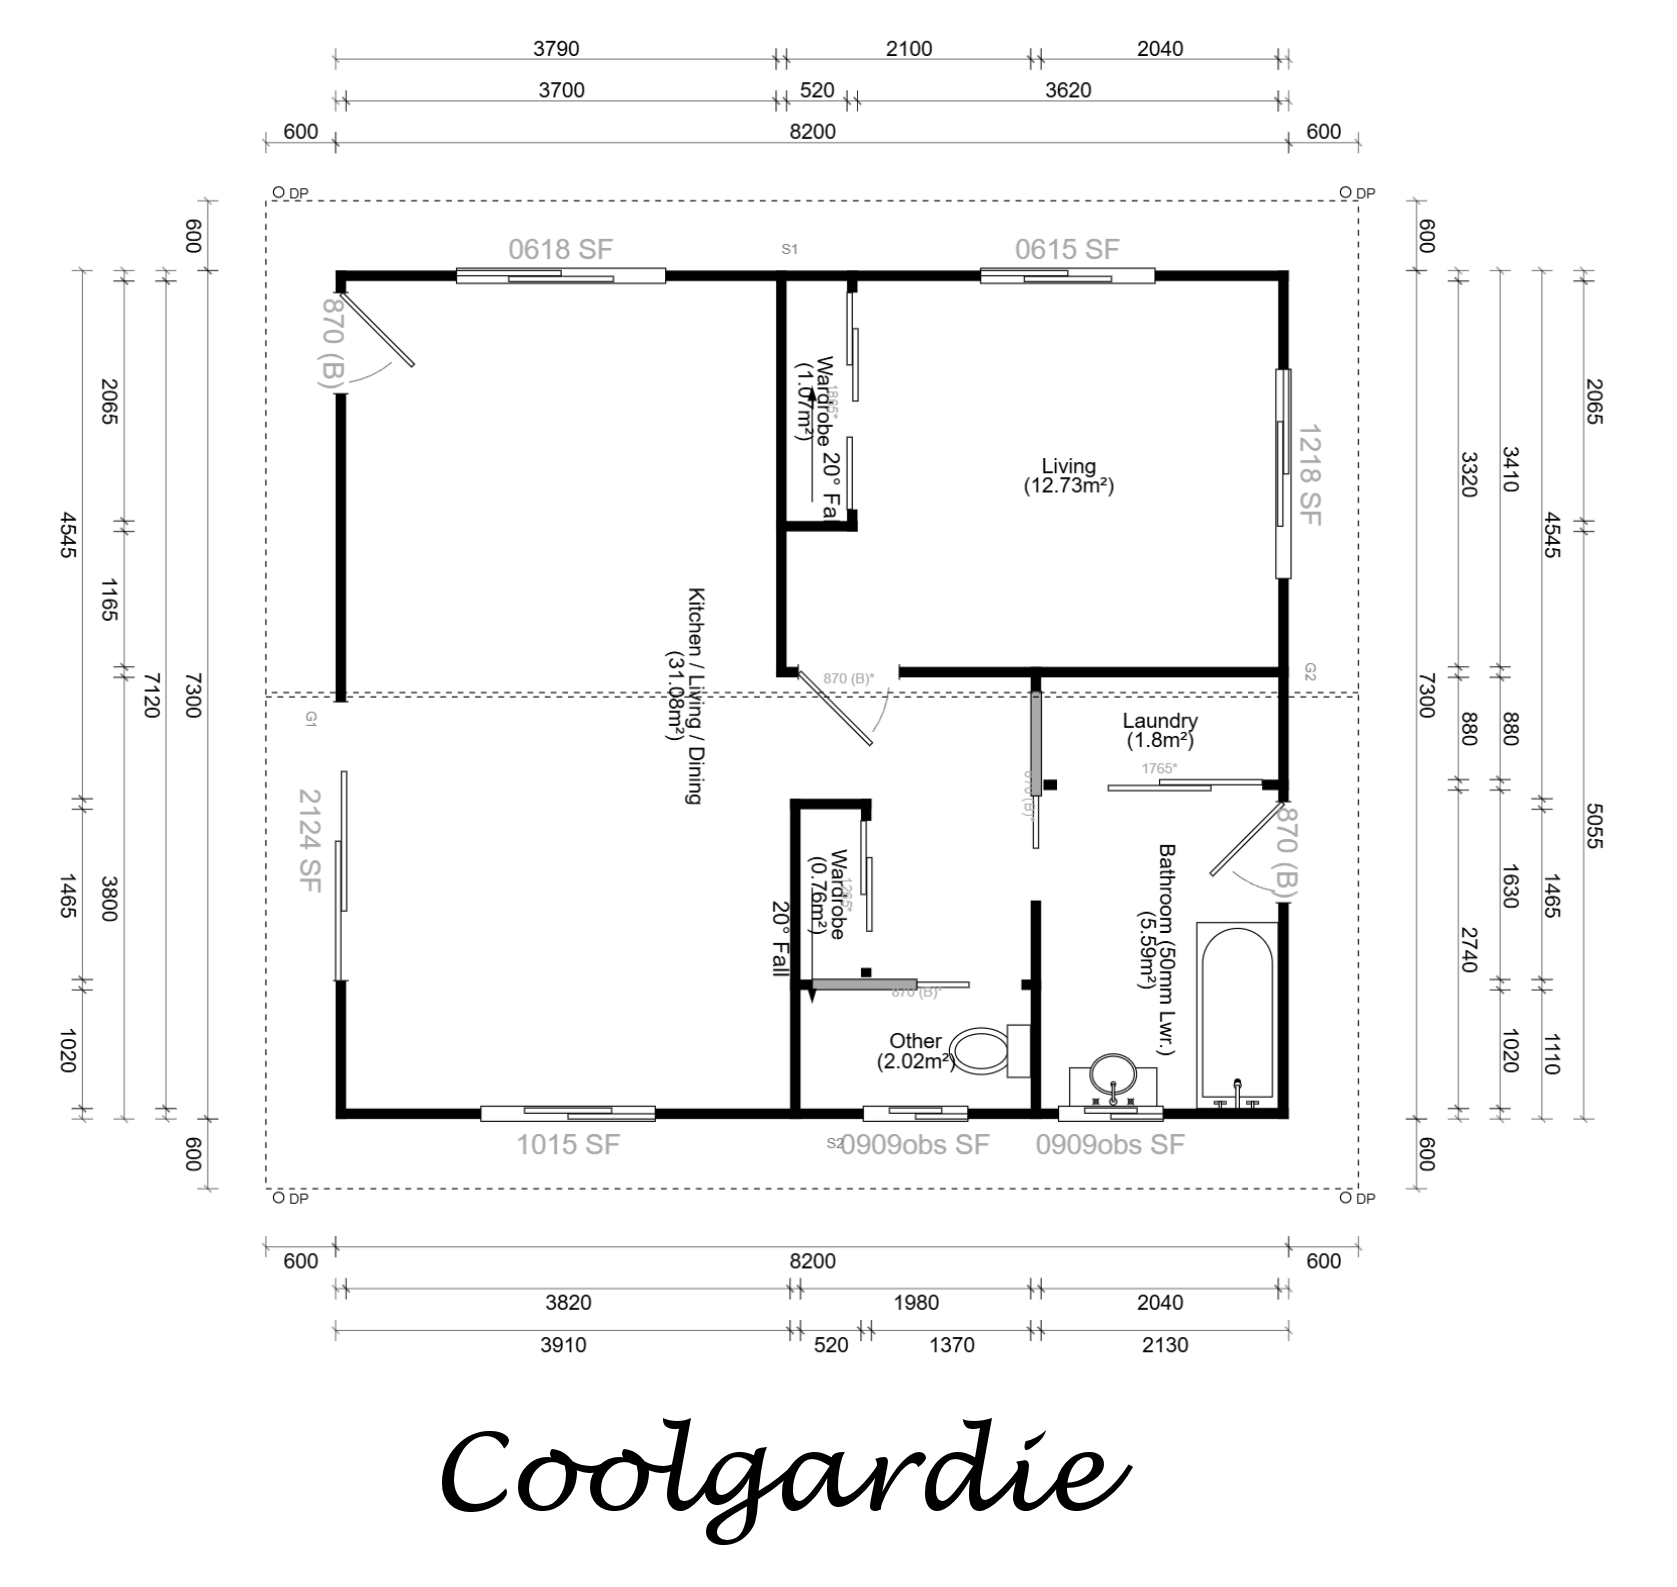 Coolgardie floorplan image